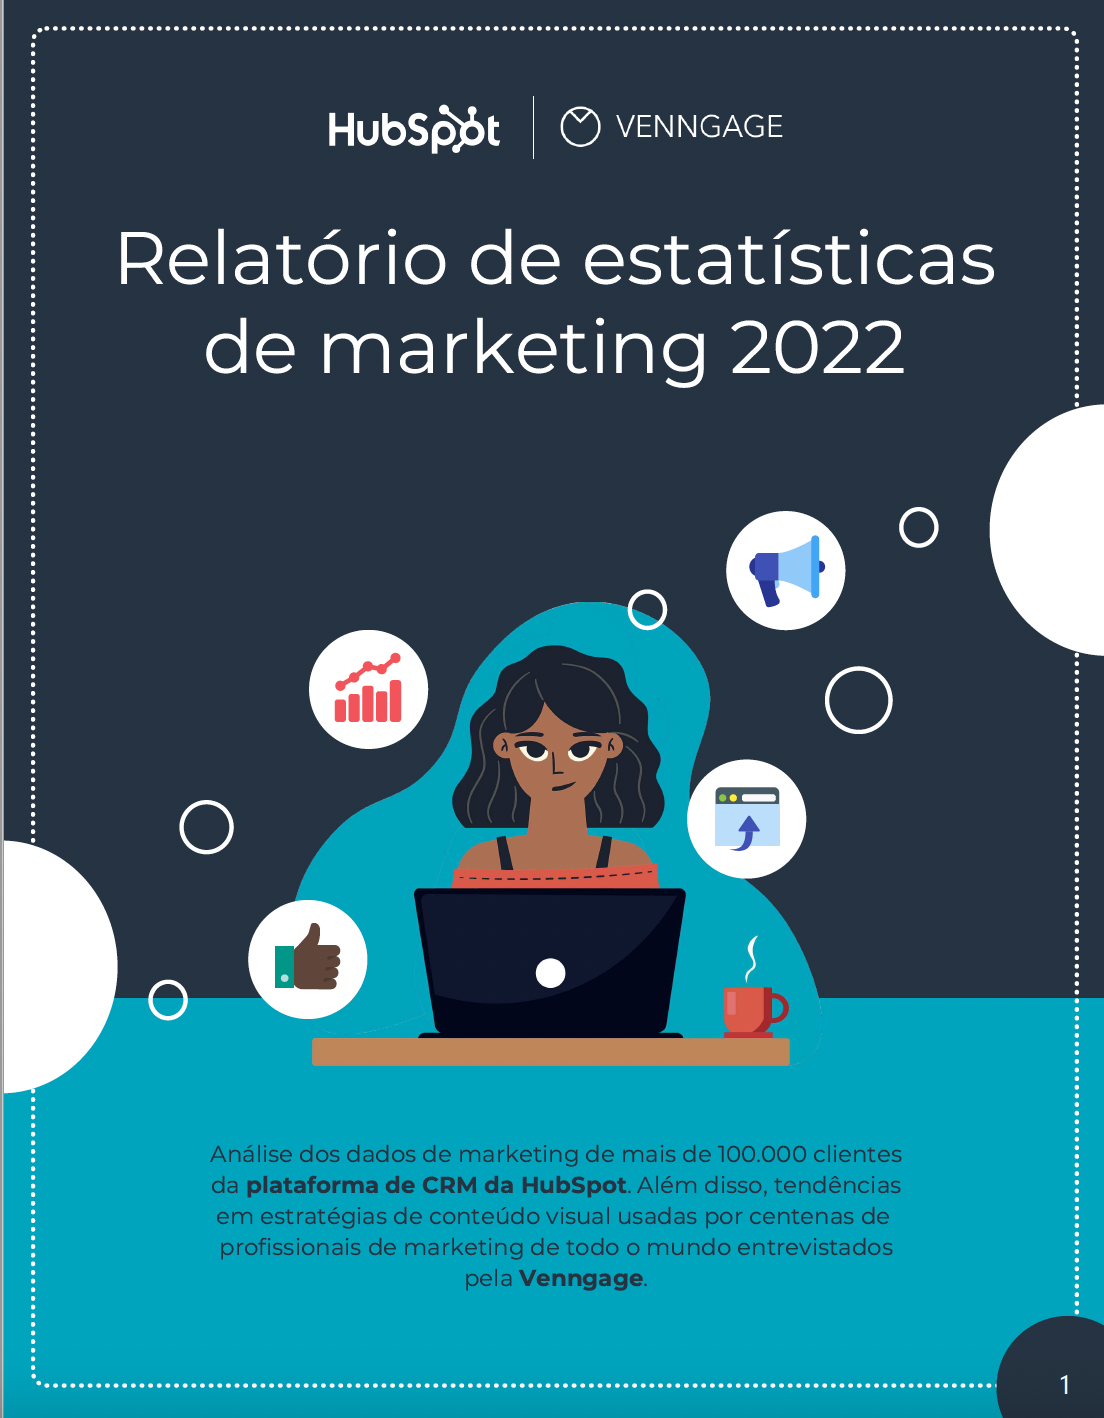 Relatório de Estatísticas de Marketing 2022 - Capa - HubSpot e Venngage